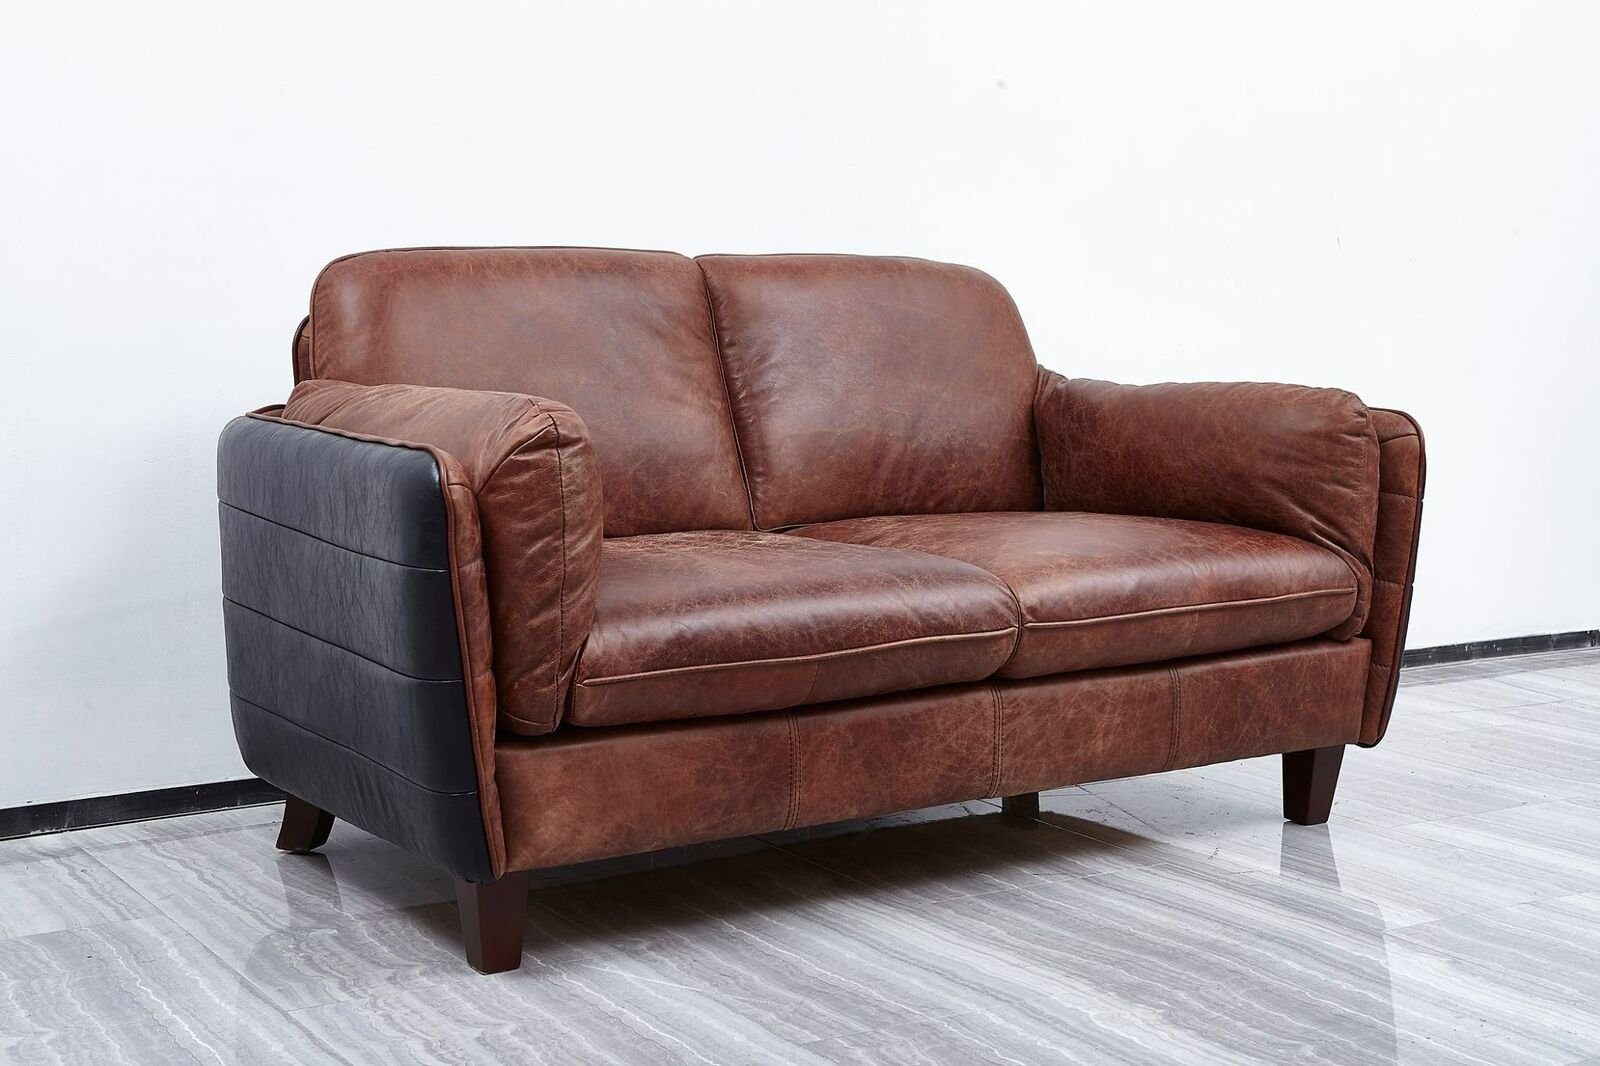 JVmoebel Sofa, Luxury Wohnzimmer Echtleder 3+2 Möbel Sofa Sitzer Vintage